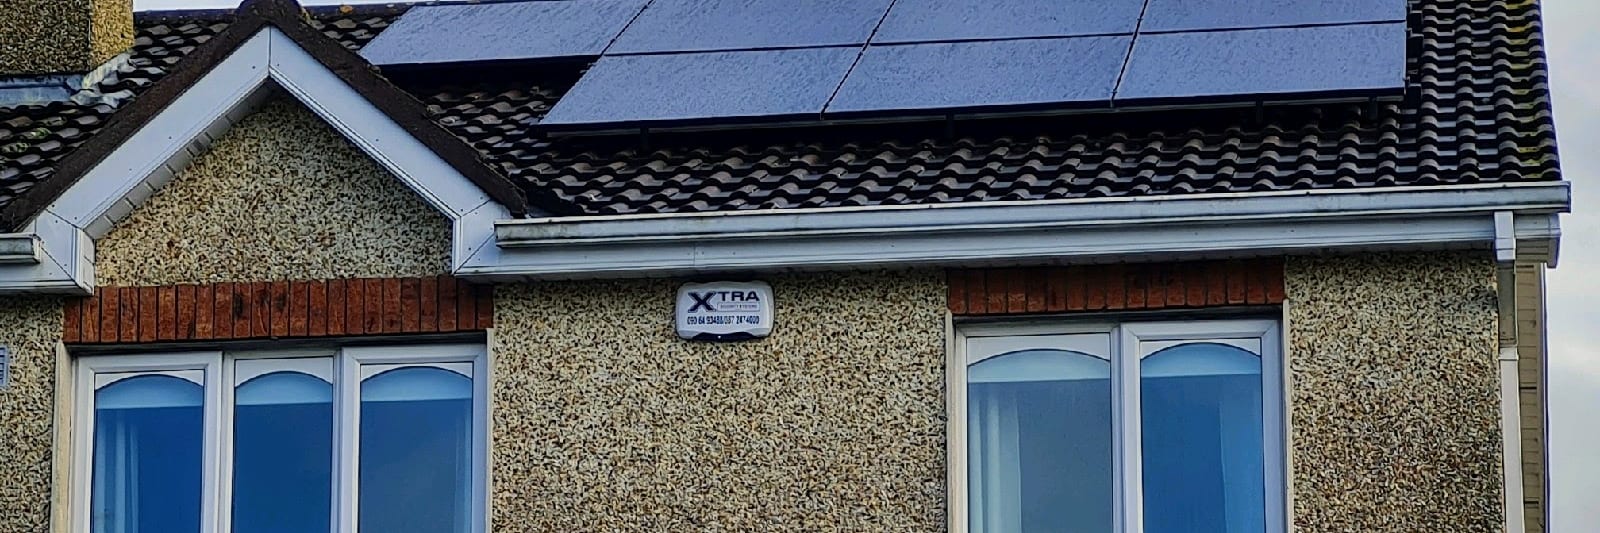 Solar panels on house in Ireland overlooking the sea